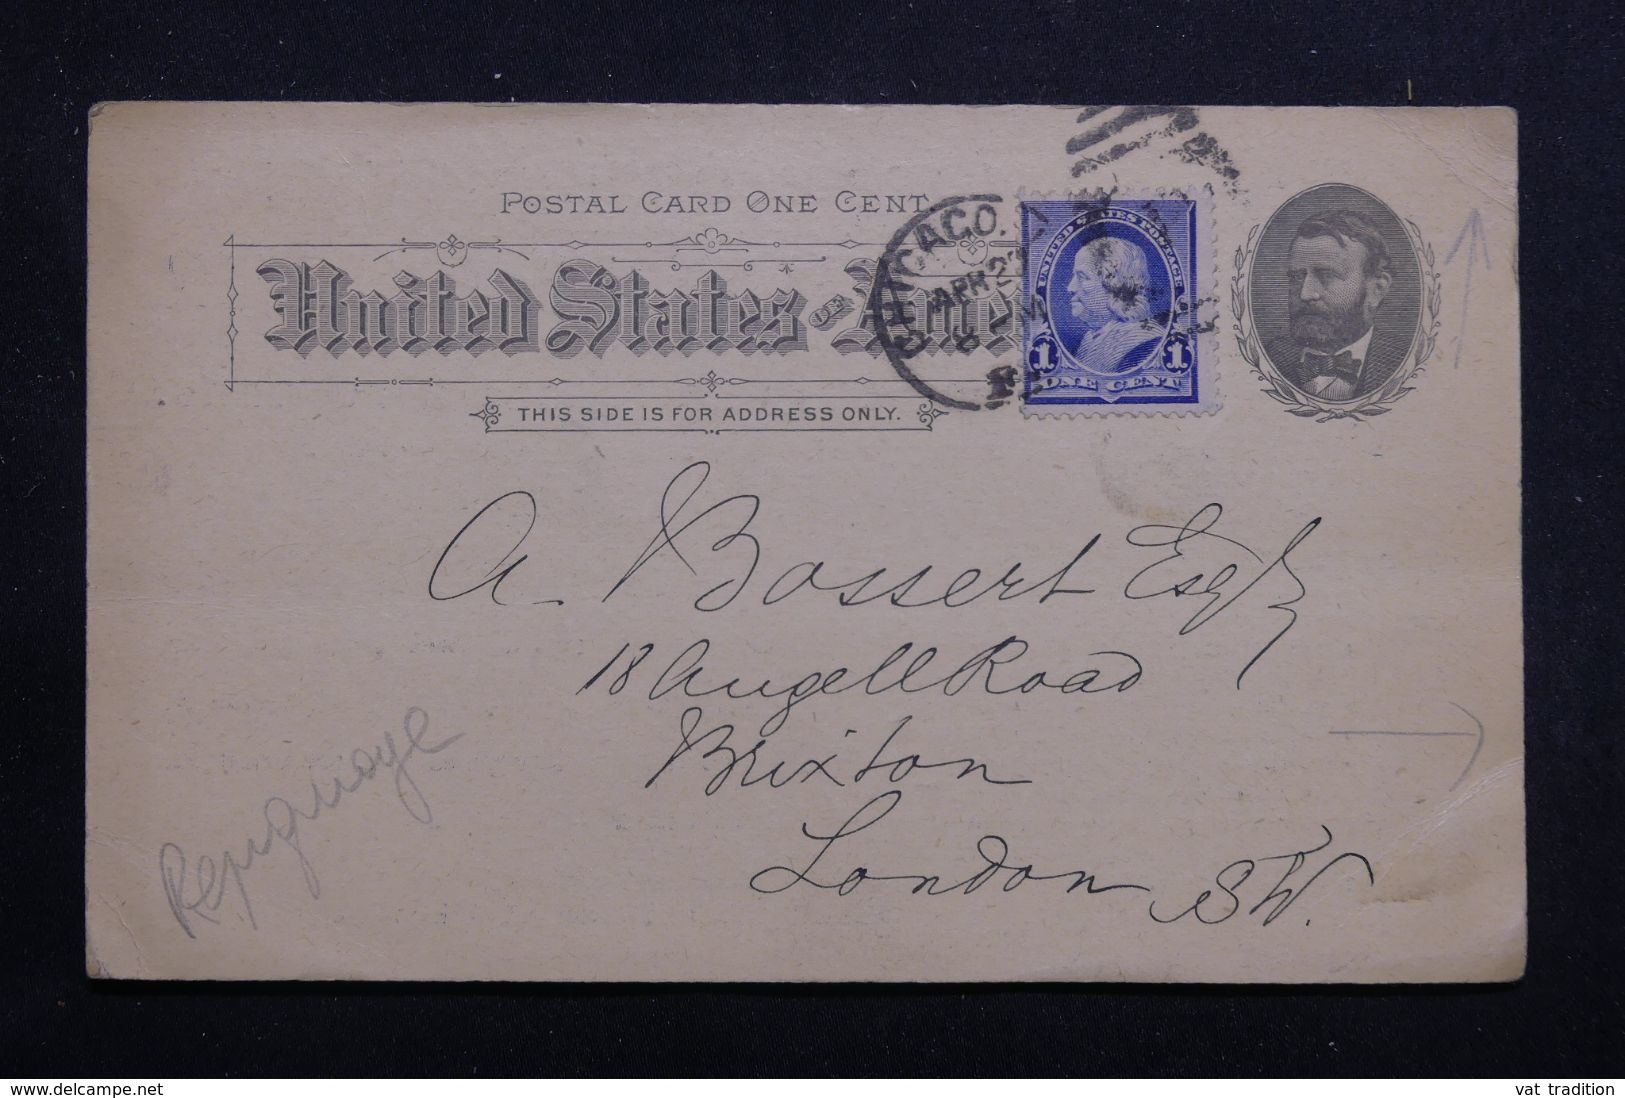 ETATS UNIS - Entier Postal ( Repiquage Commerciale ) + Complément De Chicago Pour Londres En 1892  - L 65121 - ...-1900